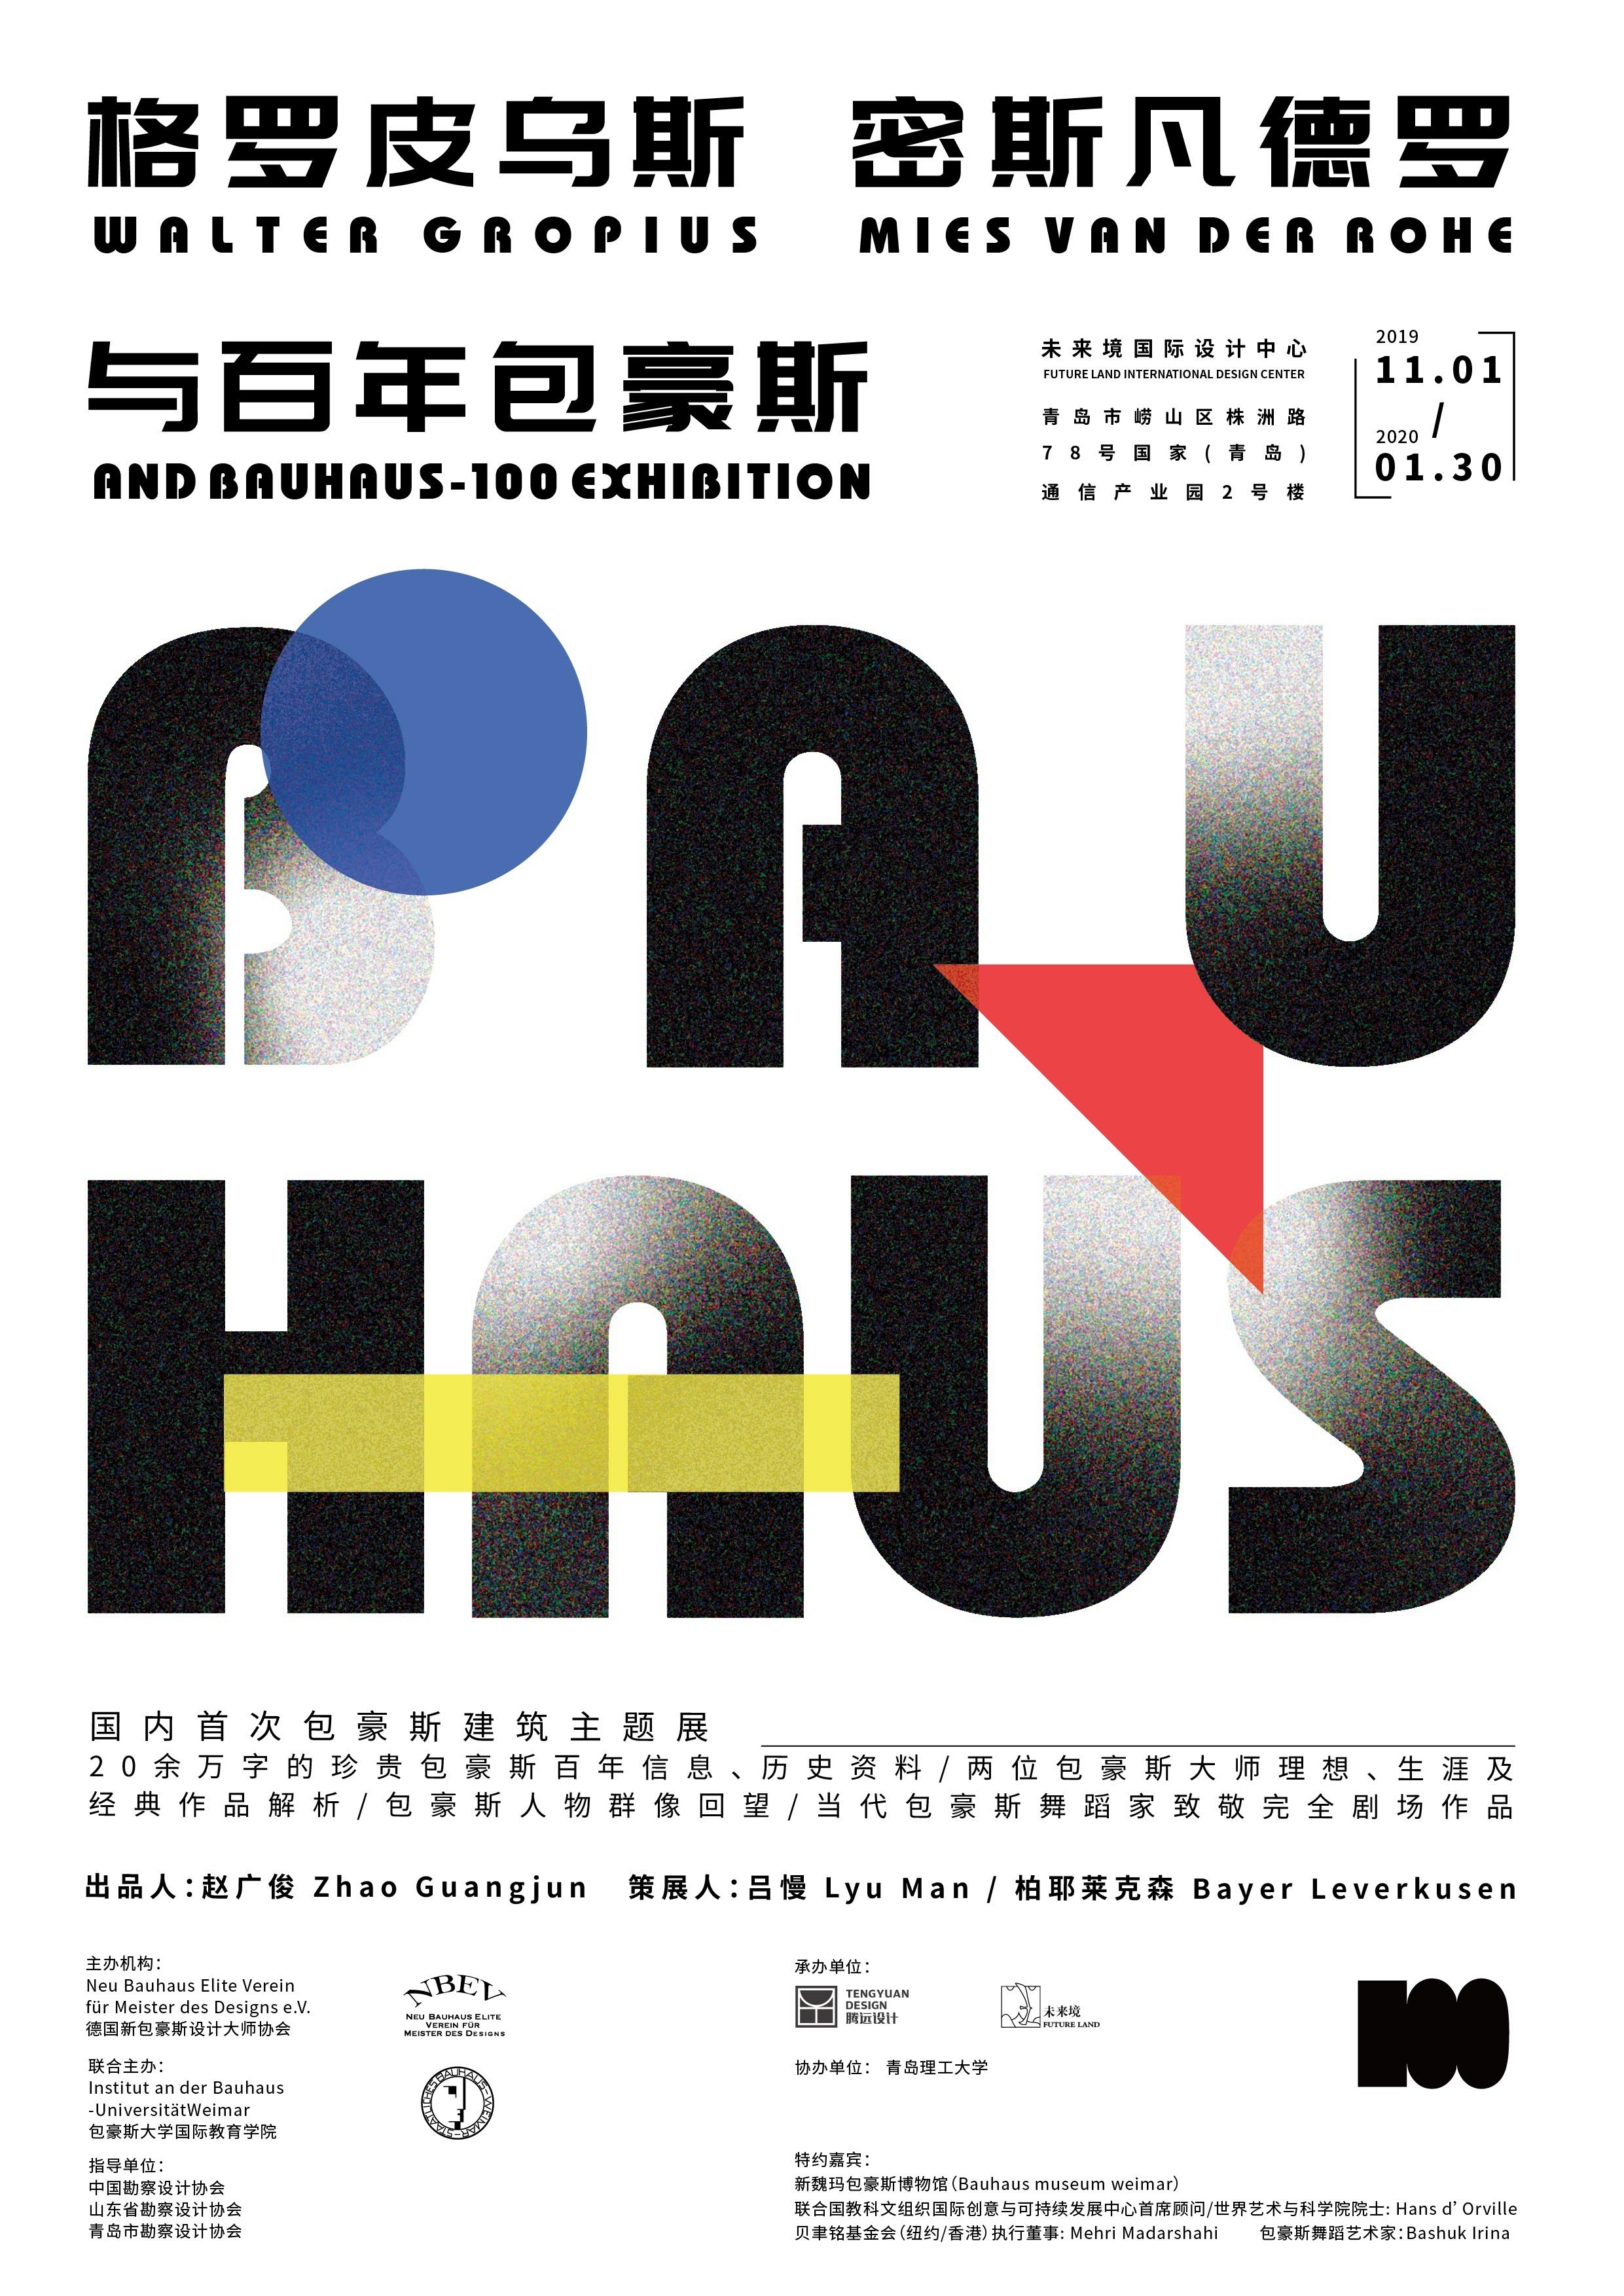 百年包豪斯建筑主题展中国首展即将启幕